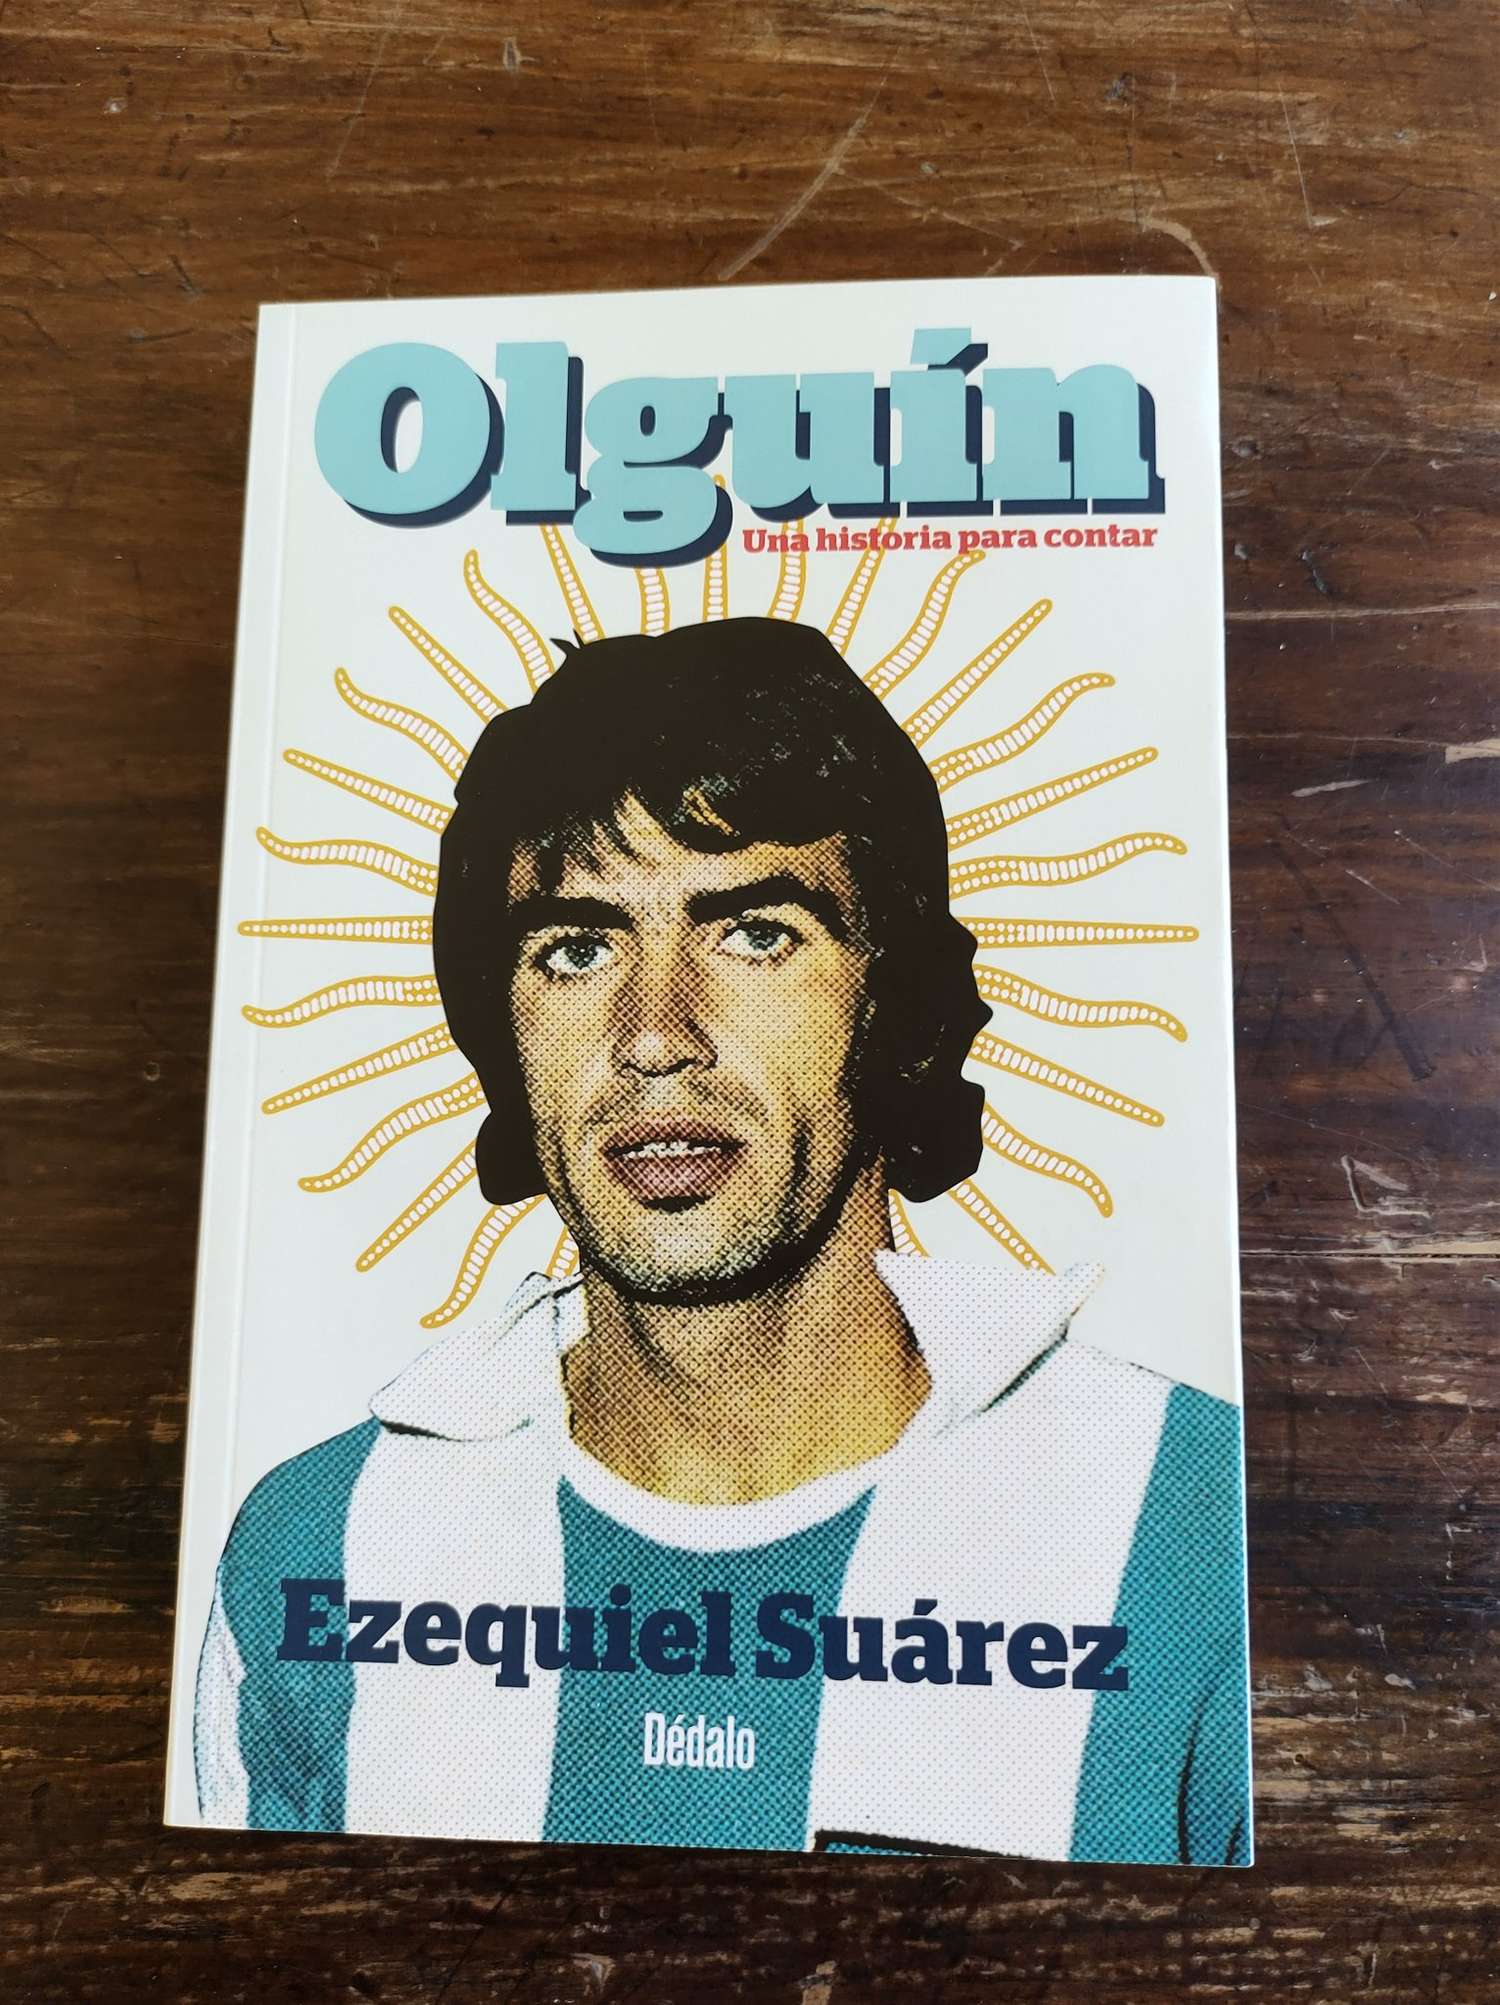 El libro que recorre la vida de Olguín.